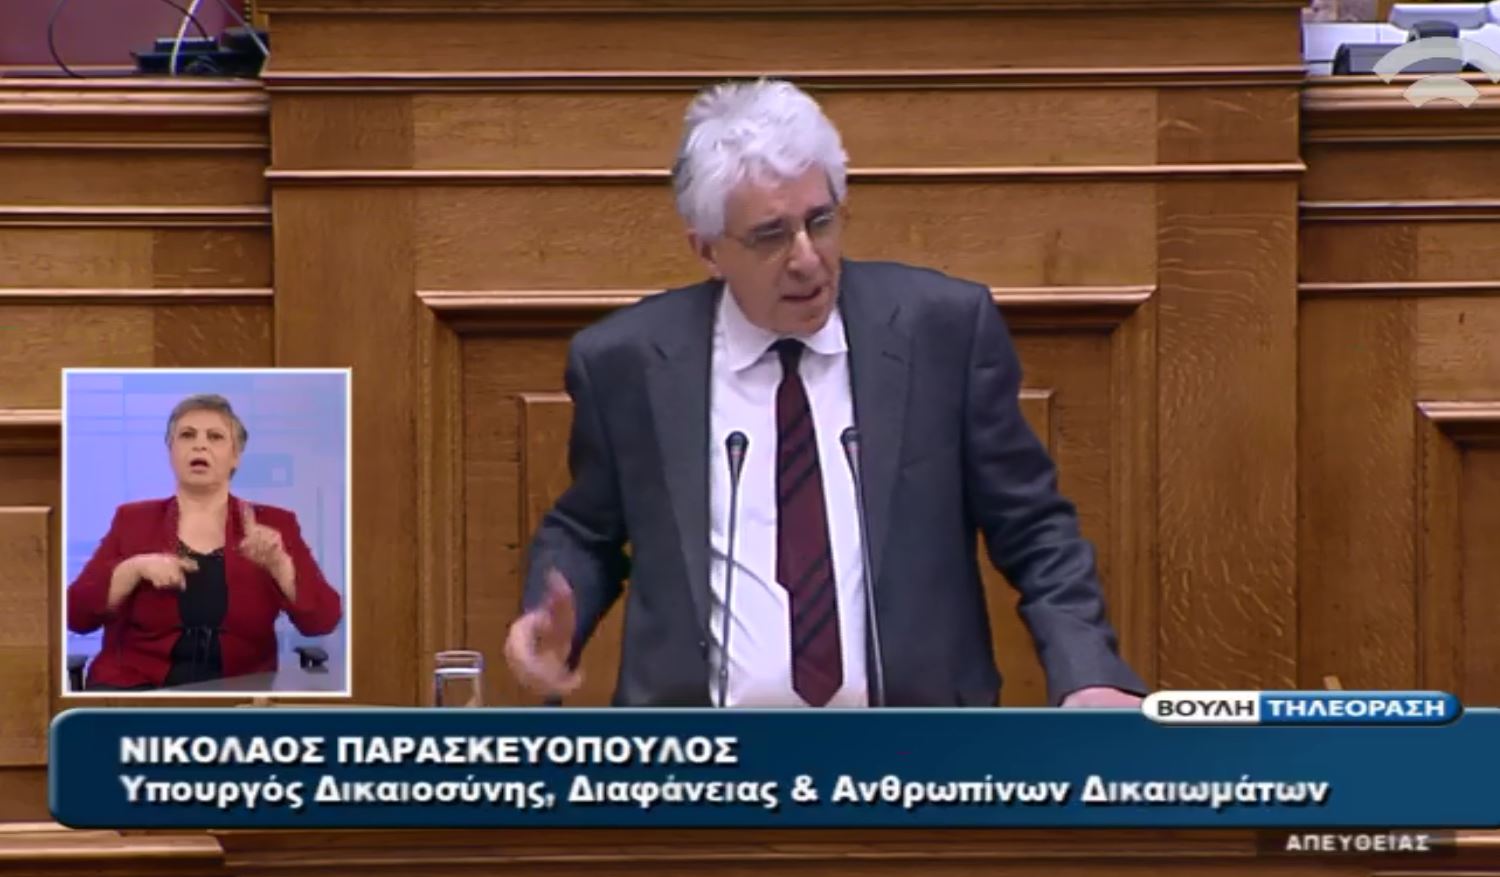 Παρασκευόπουλος: Δεν υπάρχουν φωτογραφικές διατάξεις – BINTEO